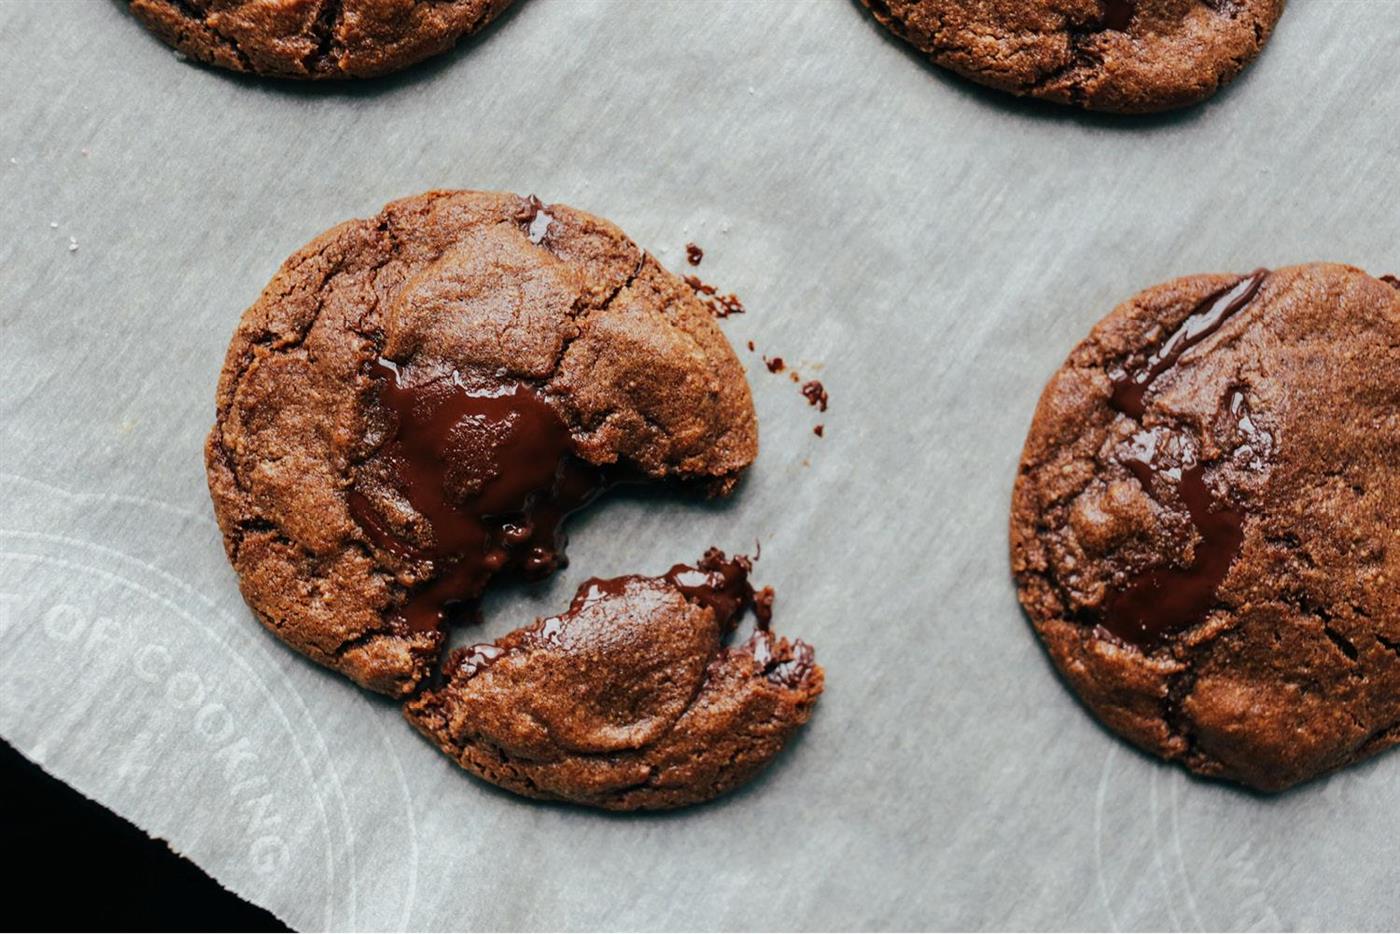 ansiedad comer alimentos adicctivos galletas chocolate